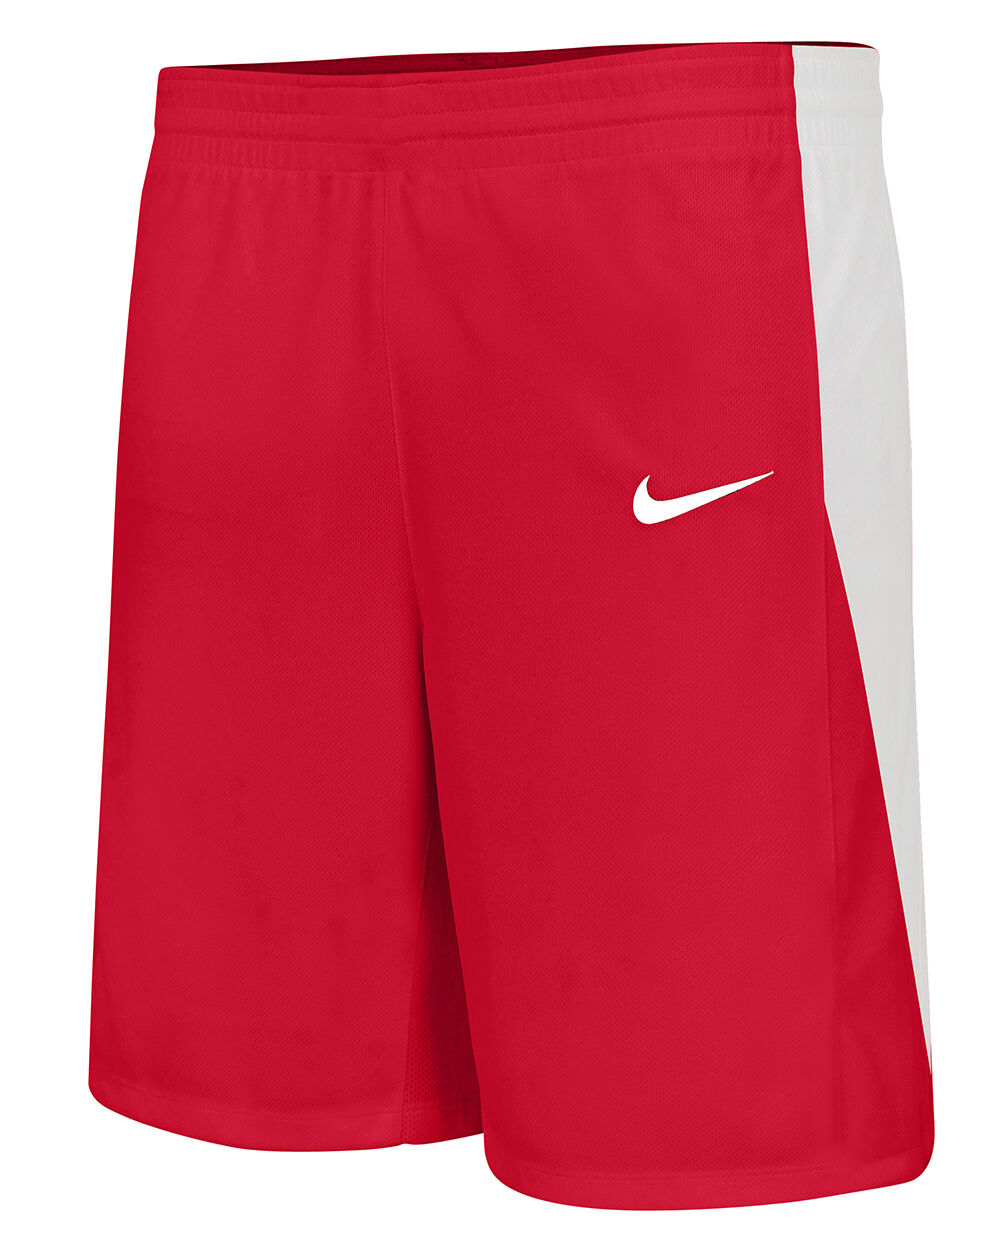 Pantalón corto de baloncesto Nike Team Rojo Niño - NT0202-657